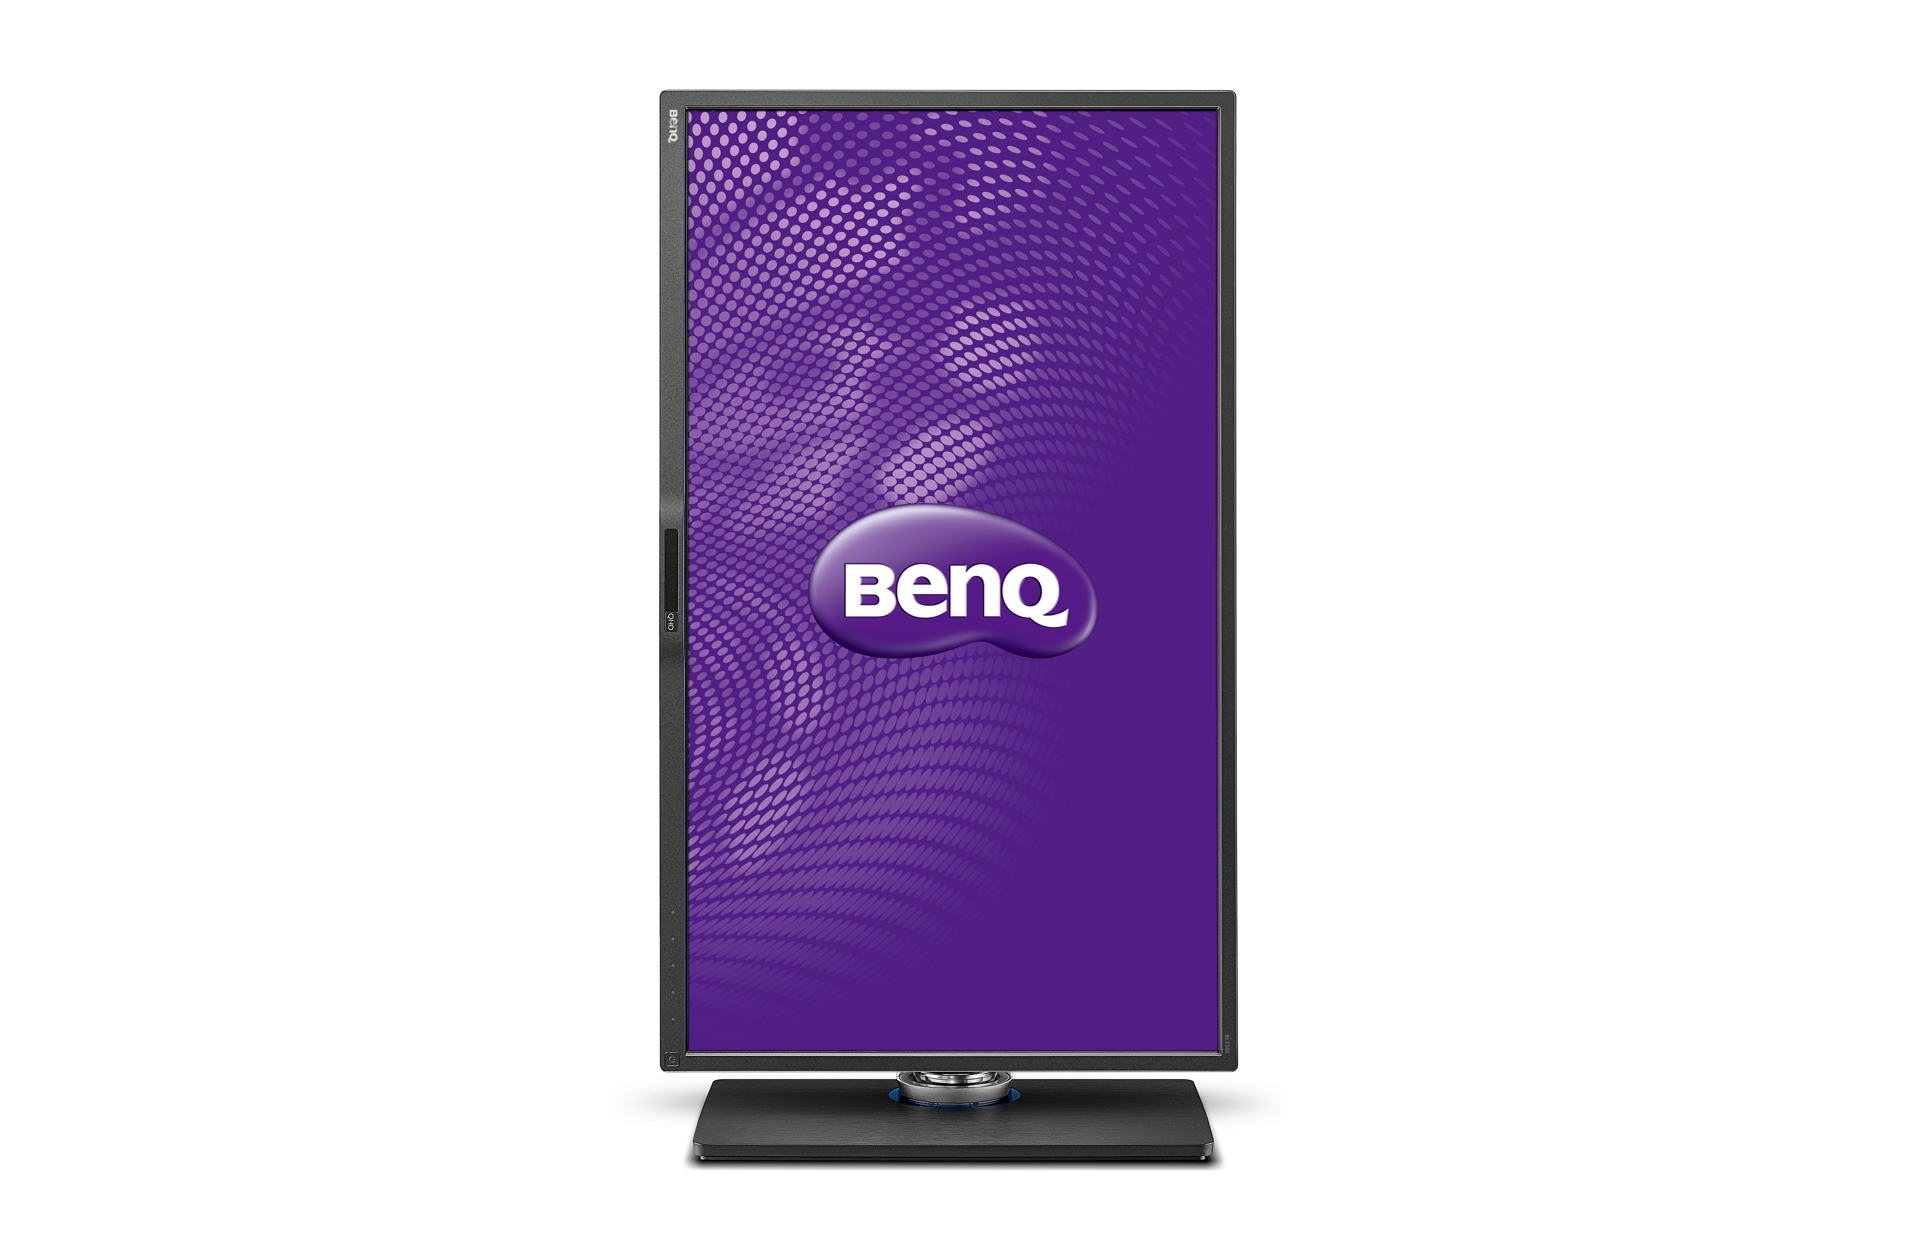 Immagine pubblicata in relazione al seguente contenuto: BenQ introduce il monitor Wide Quad High Definition BL3200PT | Nome immagine: news21130_Benq-bl3200pt_2.jpg